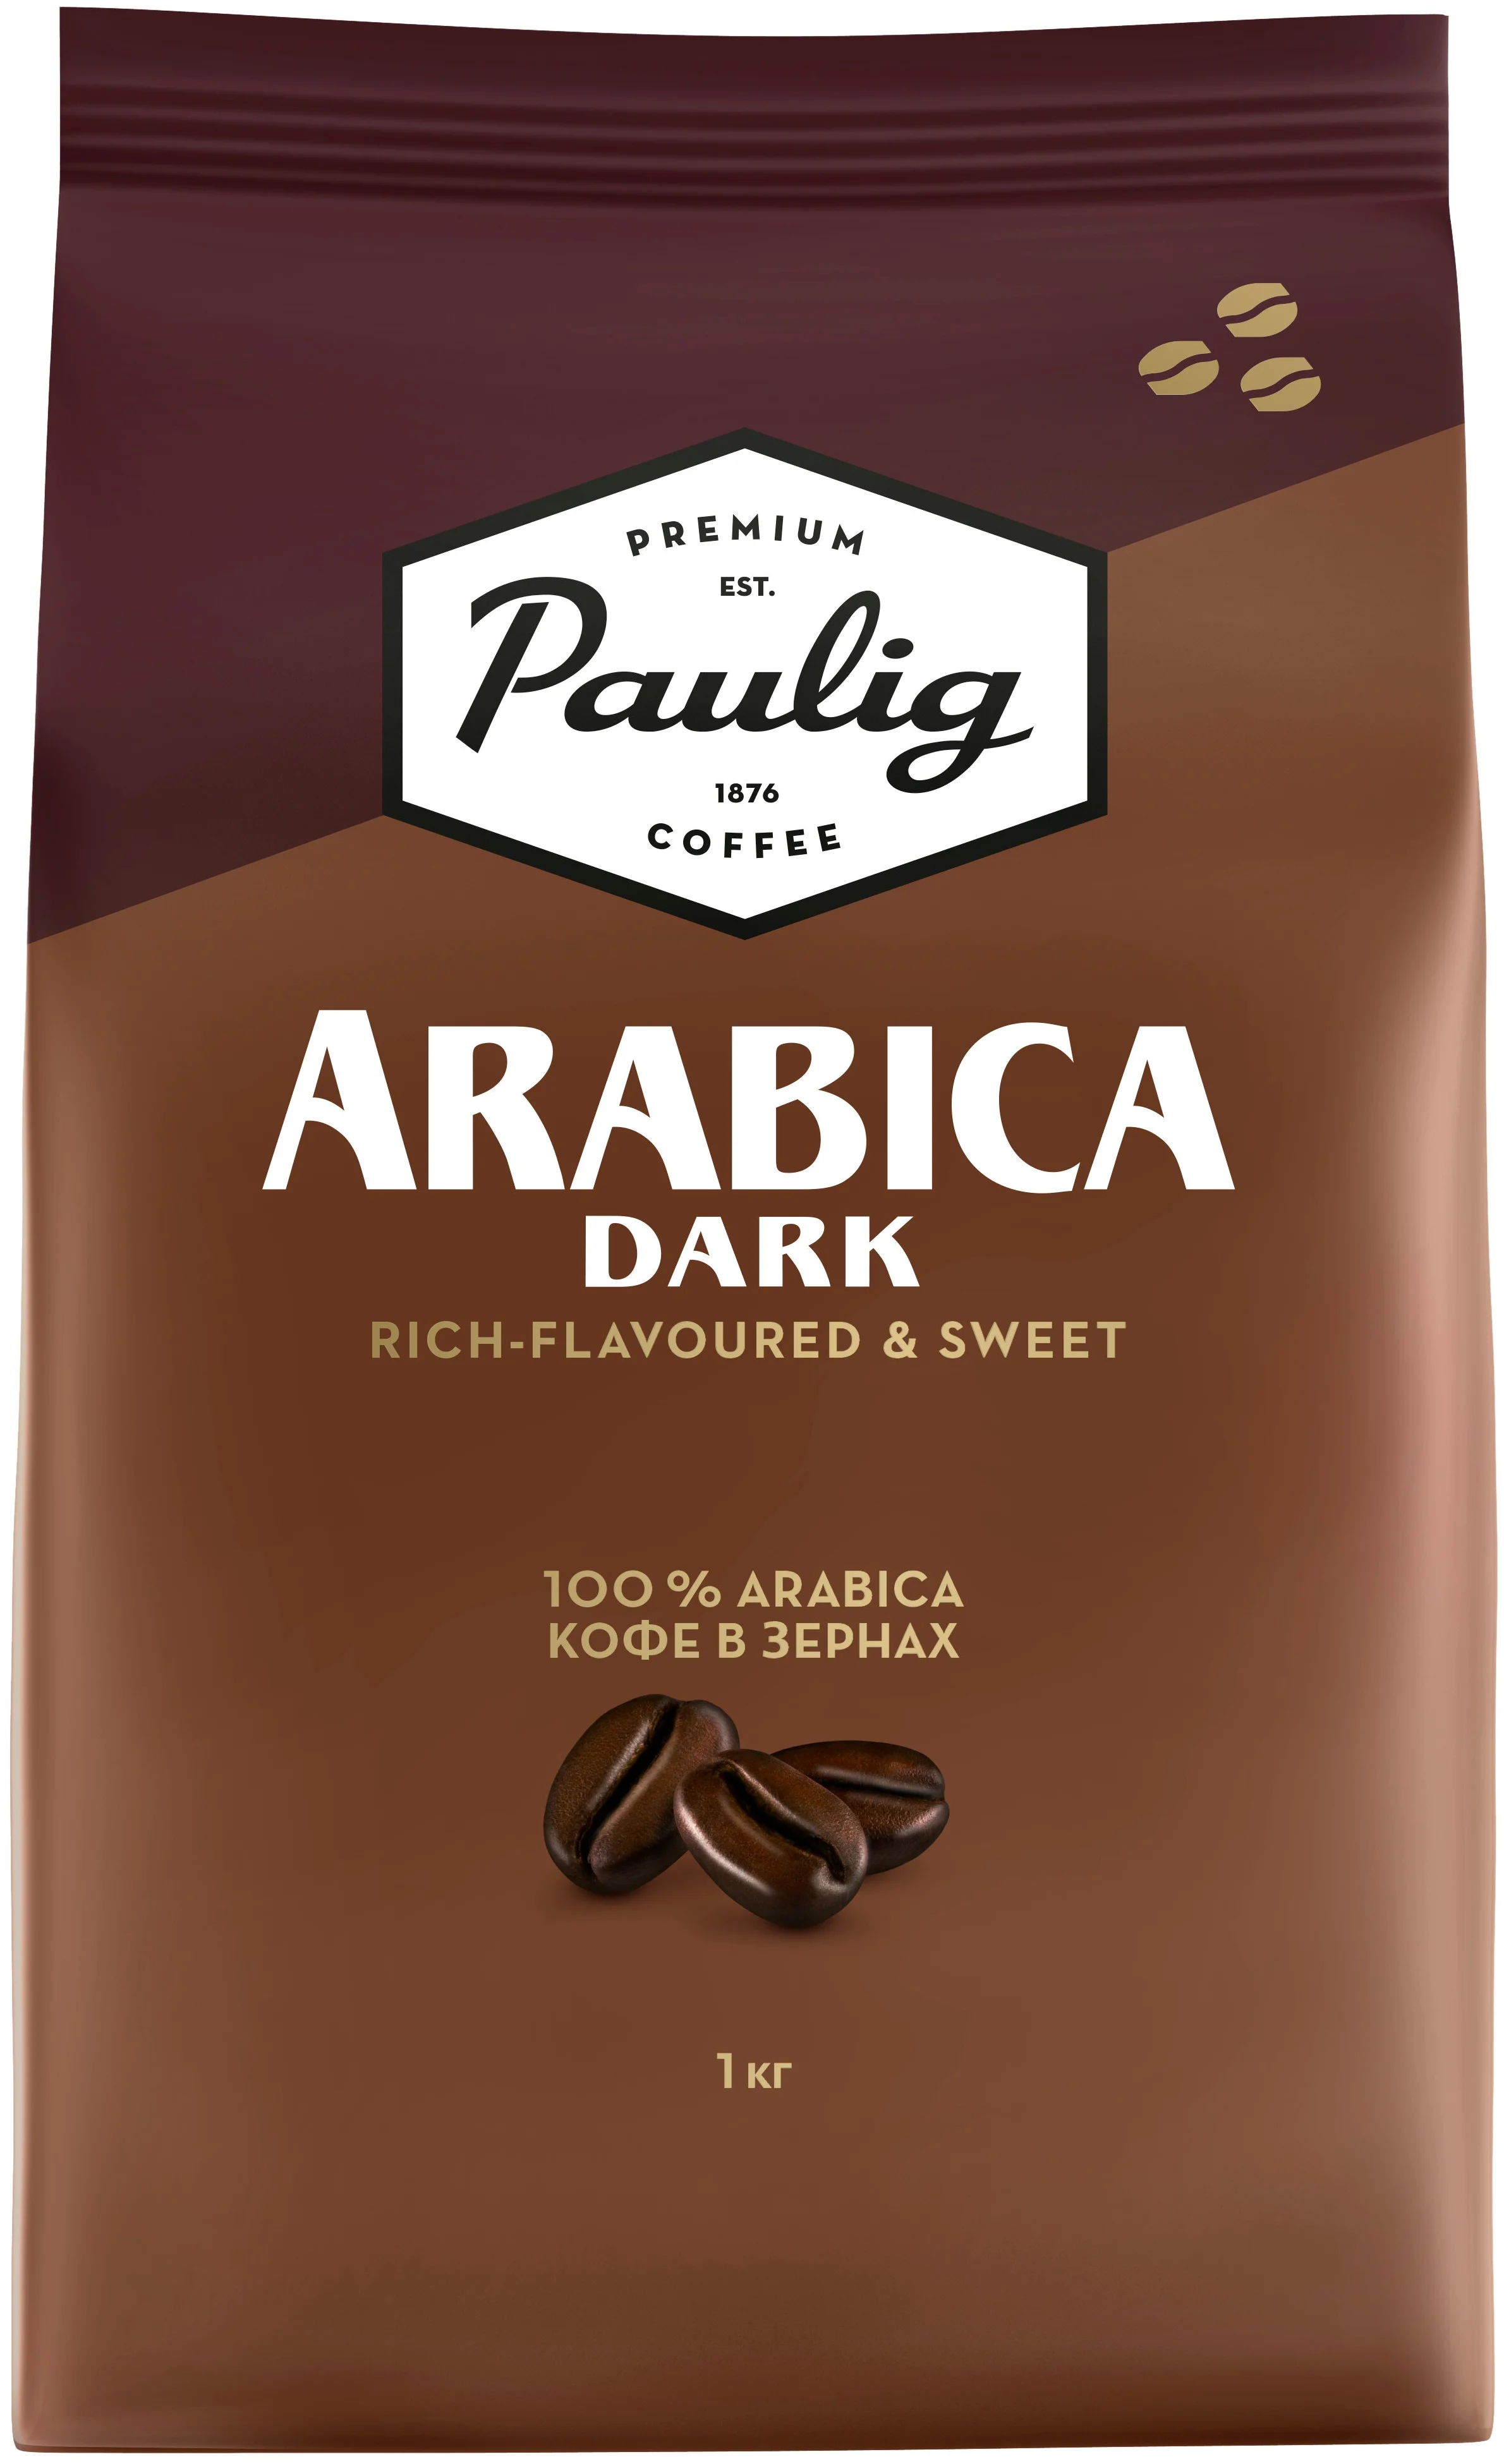 Paulig Arabica Dark - вид зерен: арабика